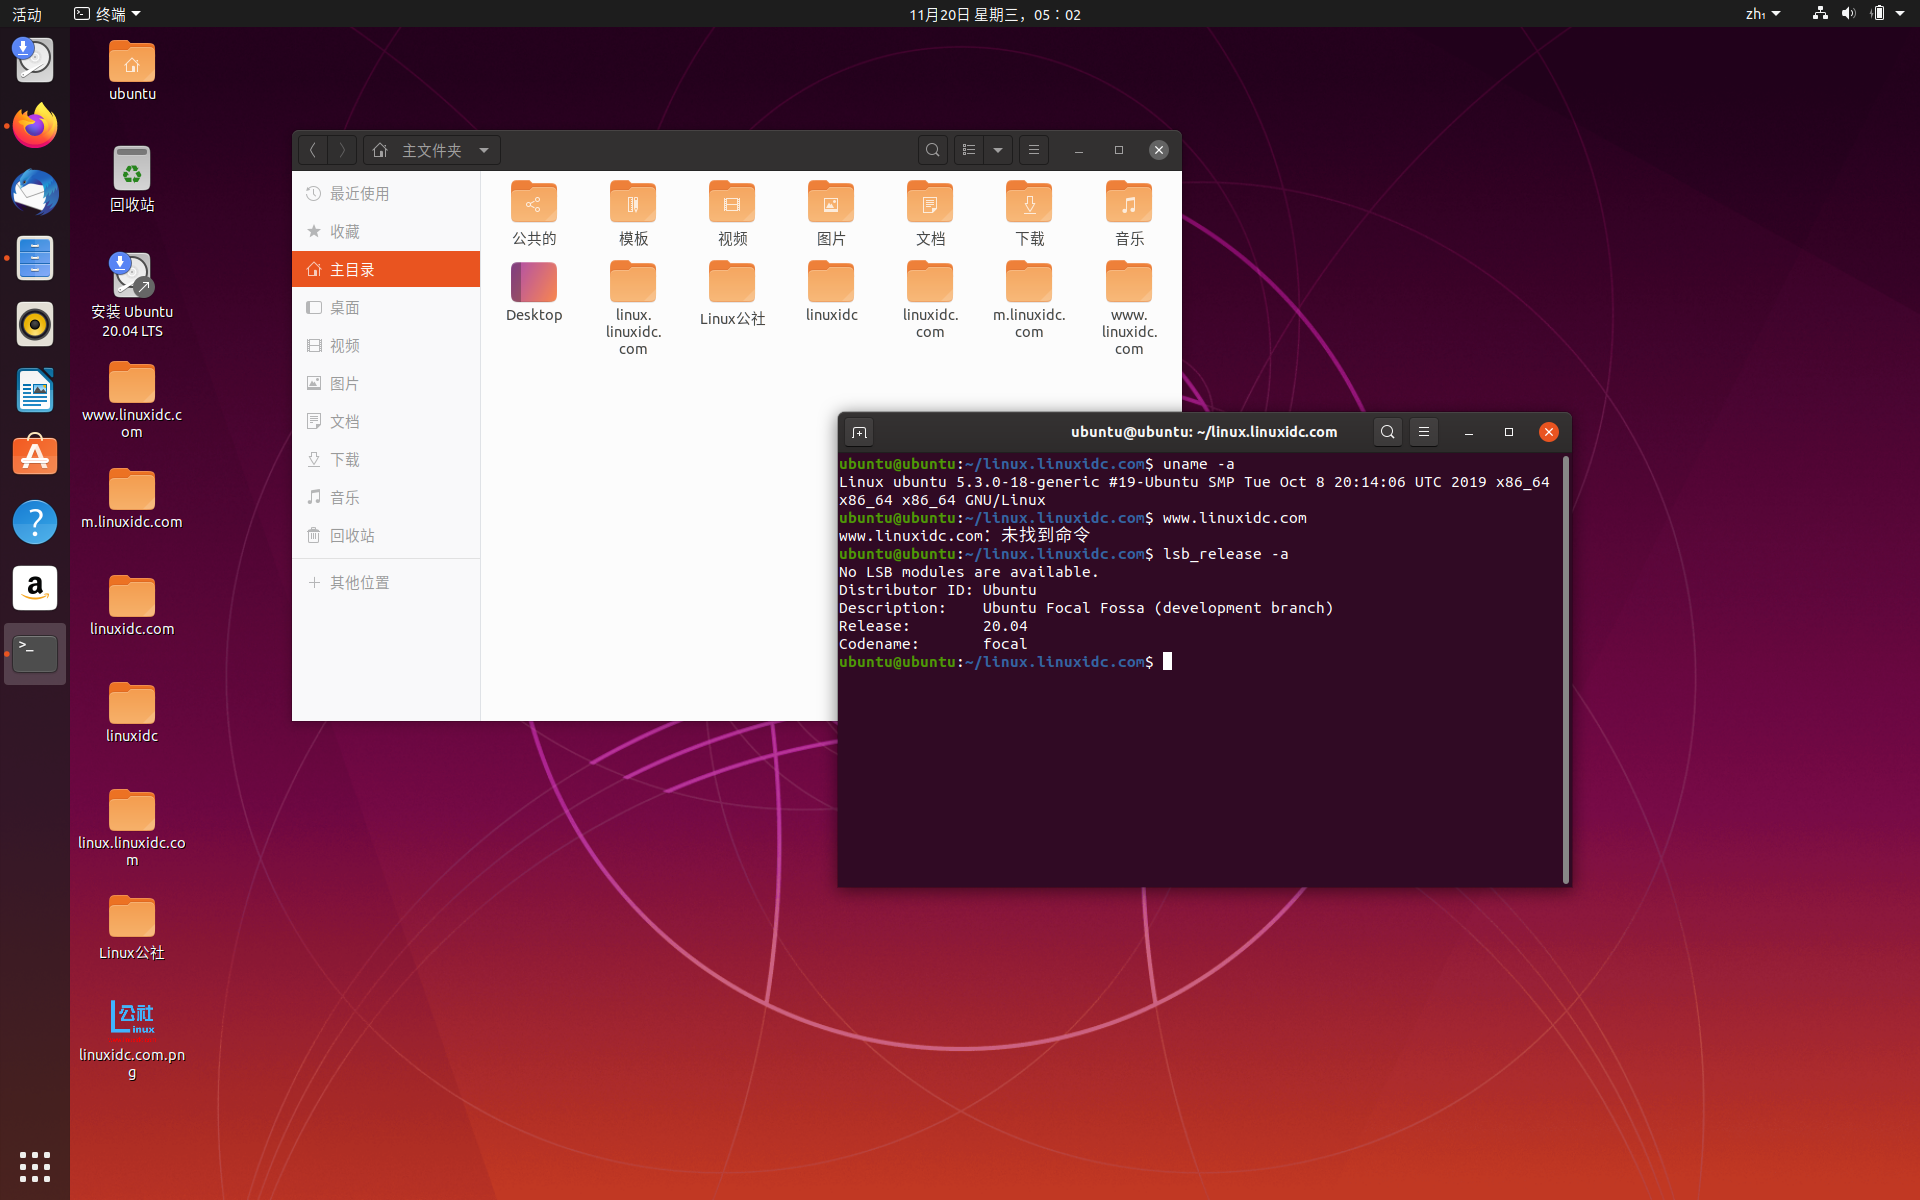 Ubuntu 20.04 LTS 可以进行公开测试了